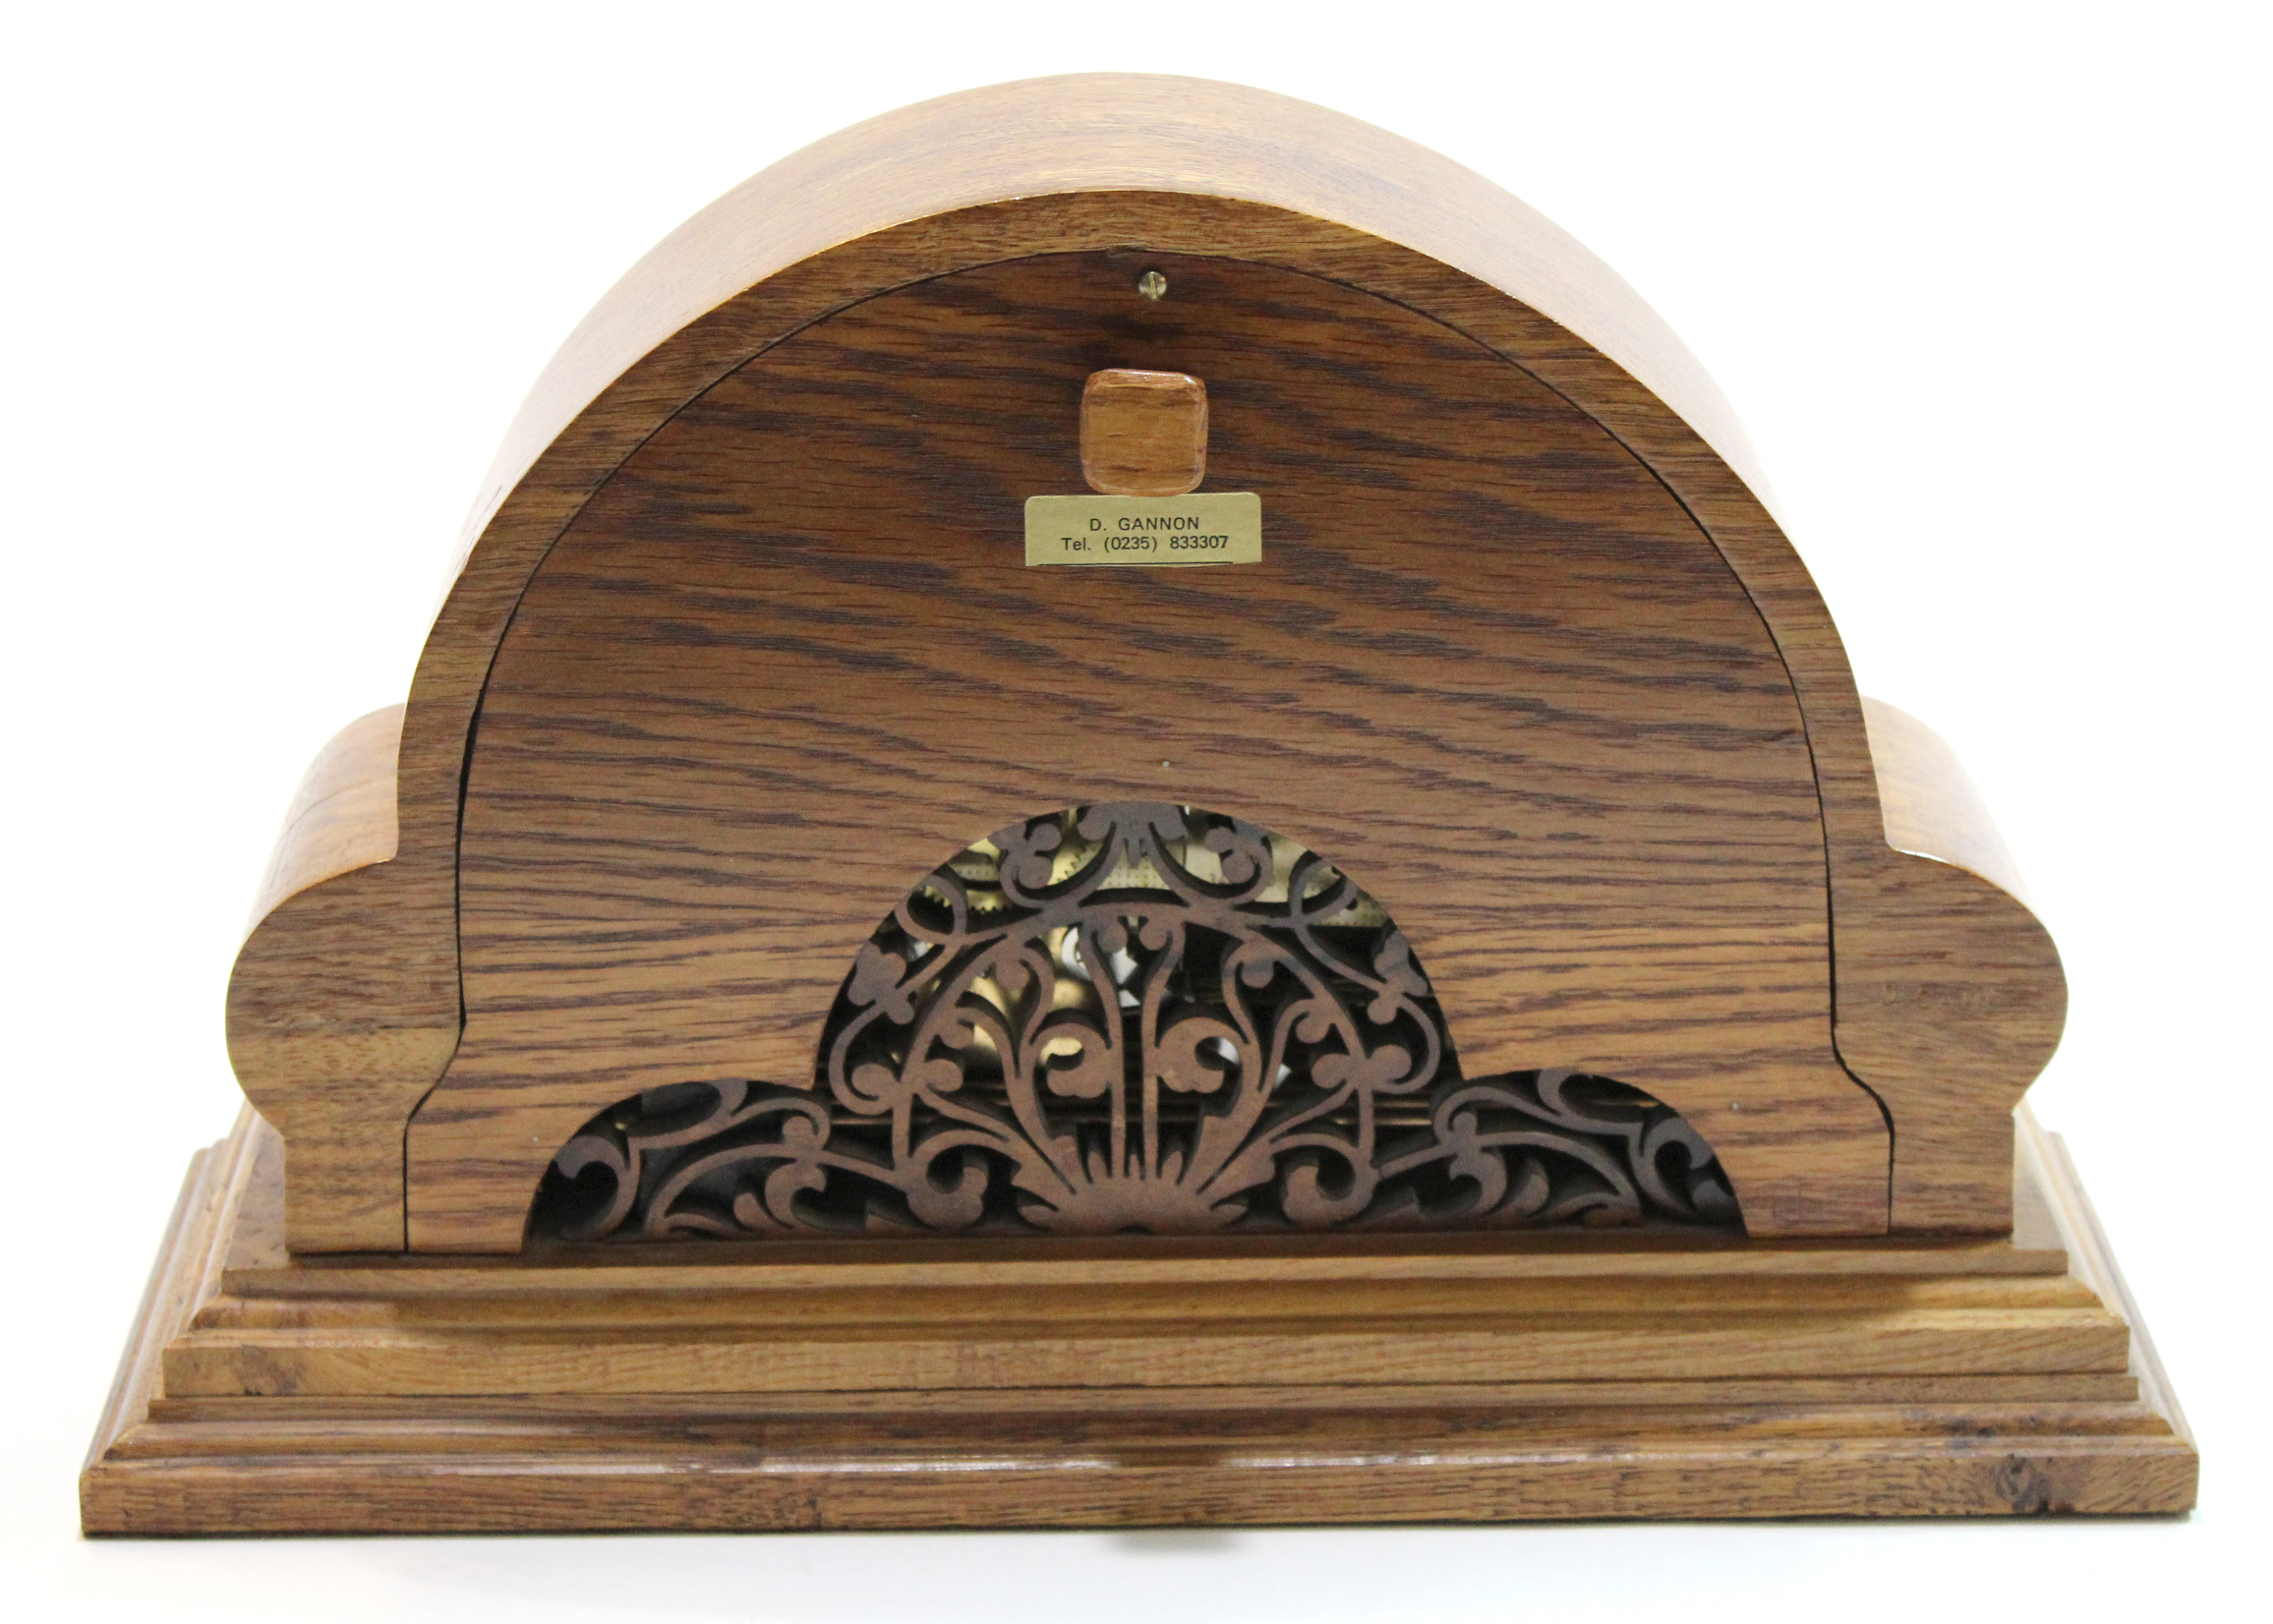 Modern mantel clock in shaped figured walnut case, 33cm long - Image 2 of 2